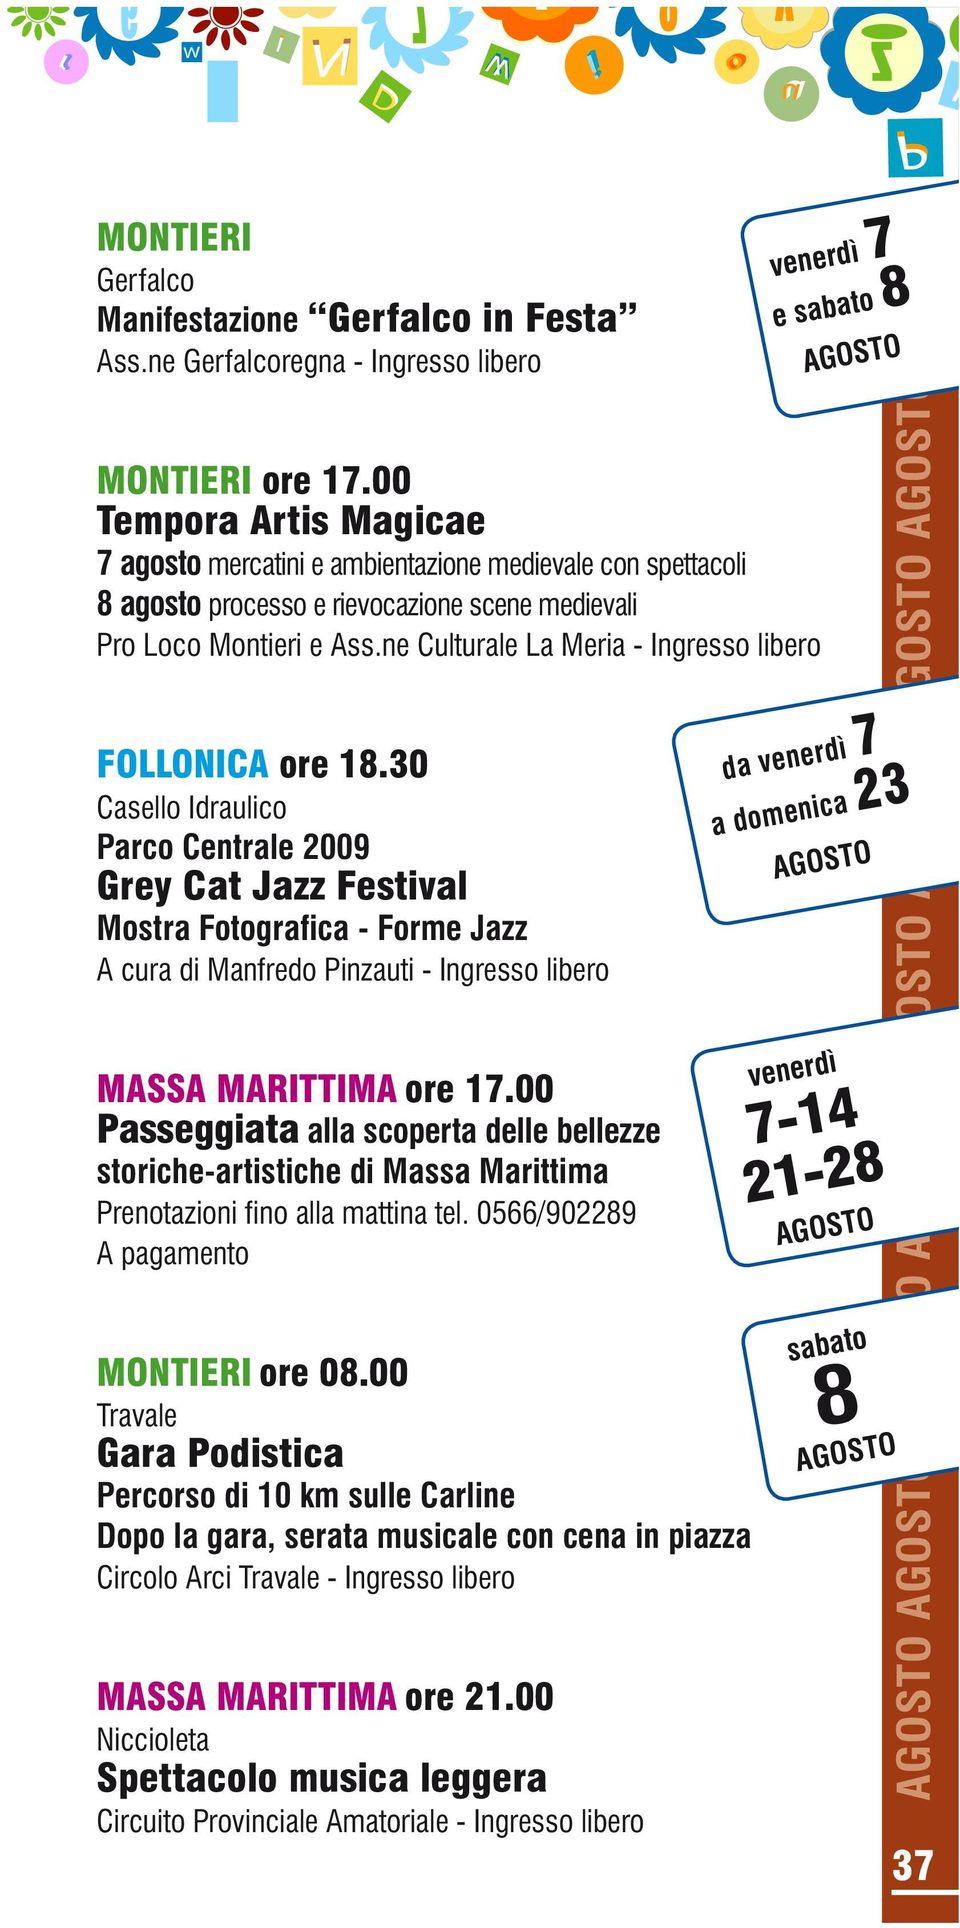 30 Casello Idraulico Grey Cat Jazz Festival Mostra Fotografica - Forme Jazz A cura di Manfredo Pinzauti - MASSA MARITTIMA ore 17.